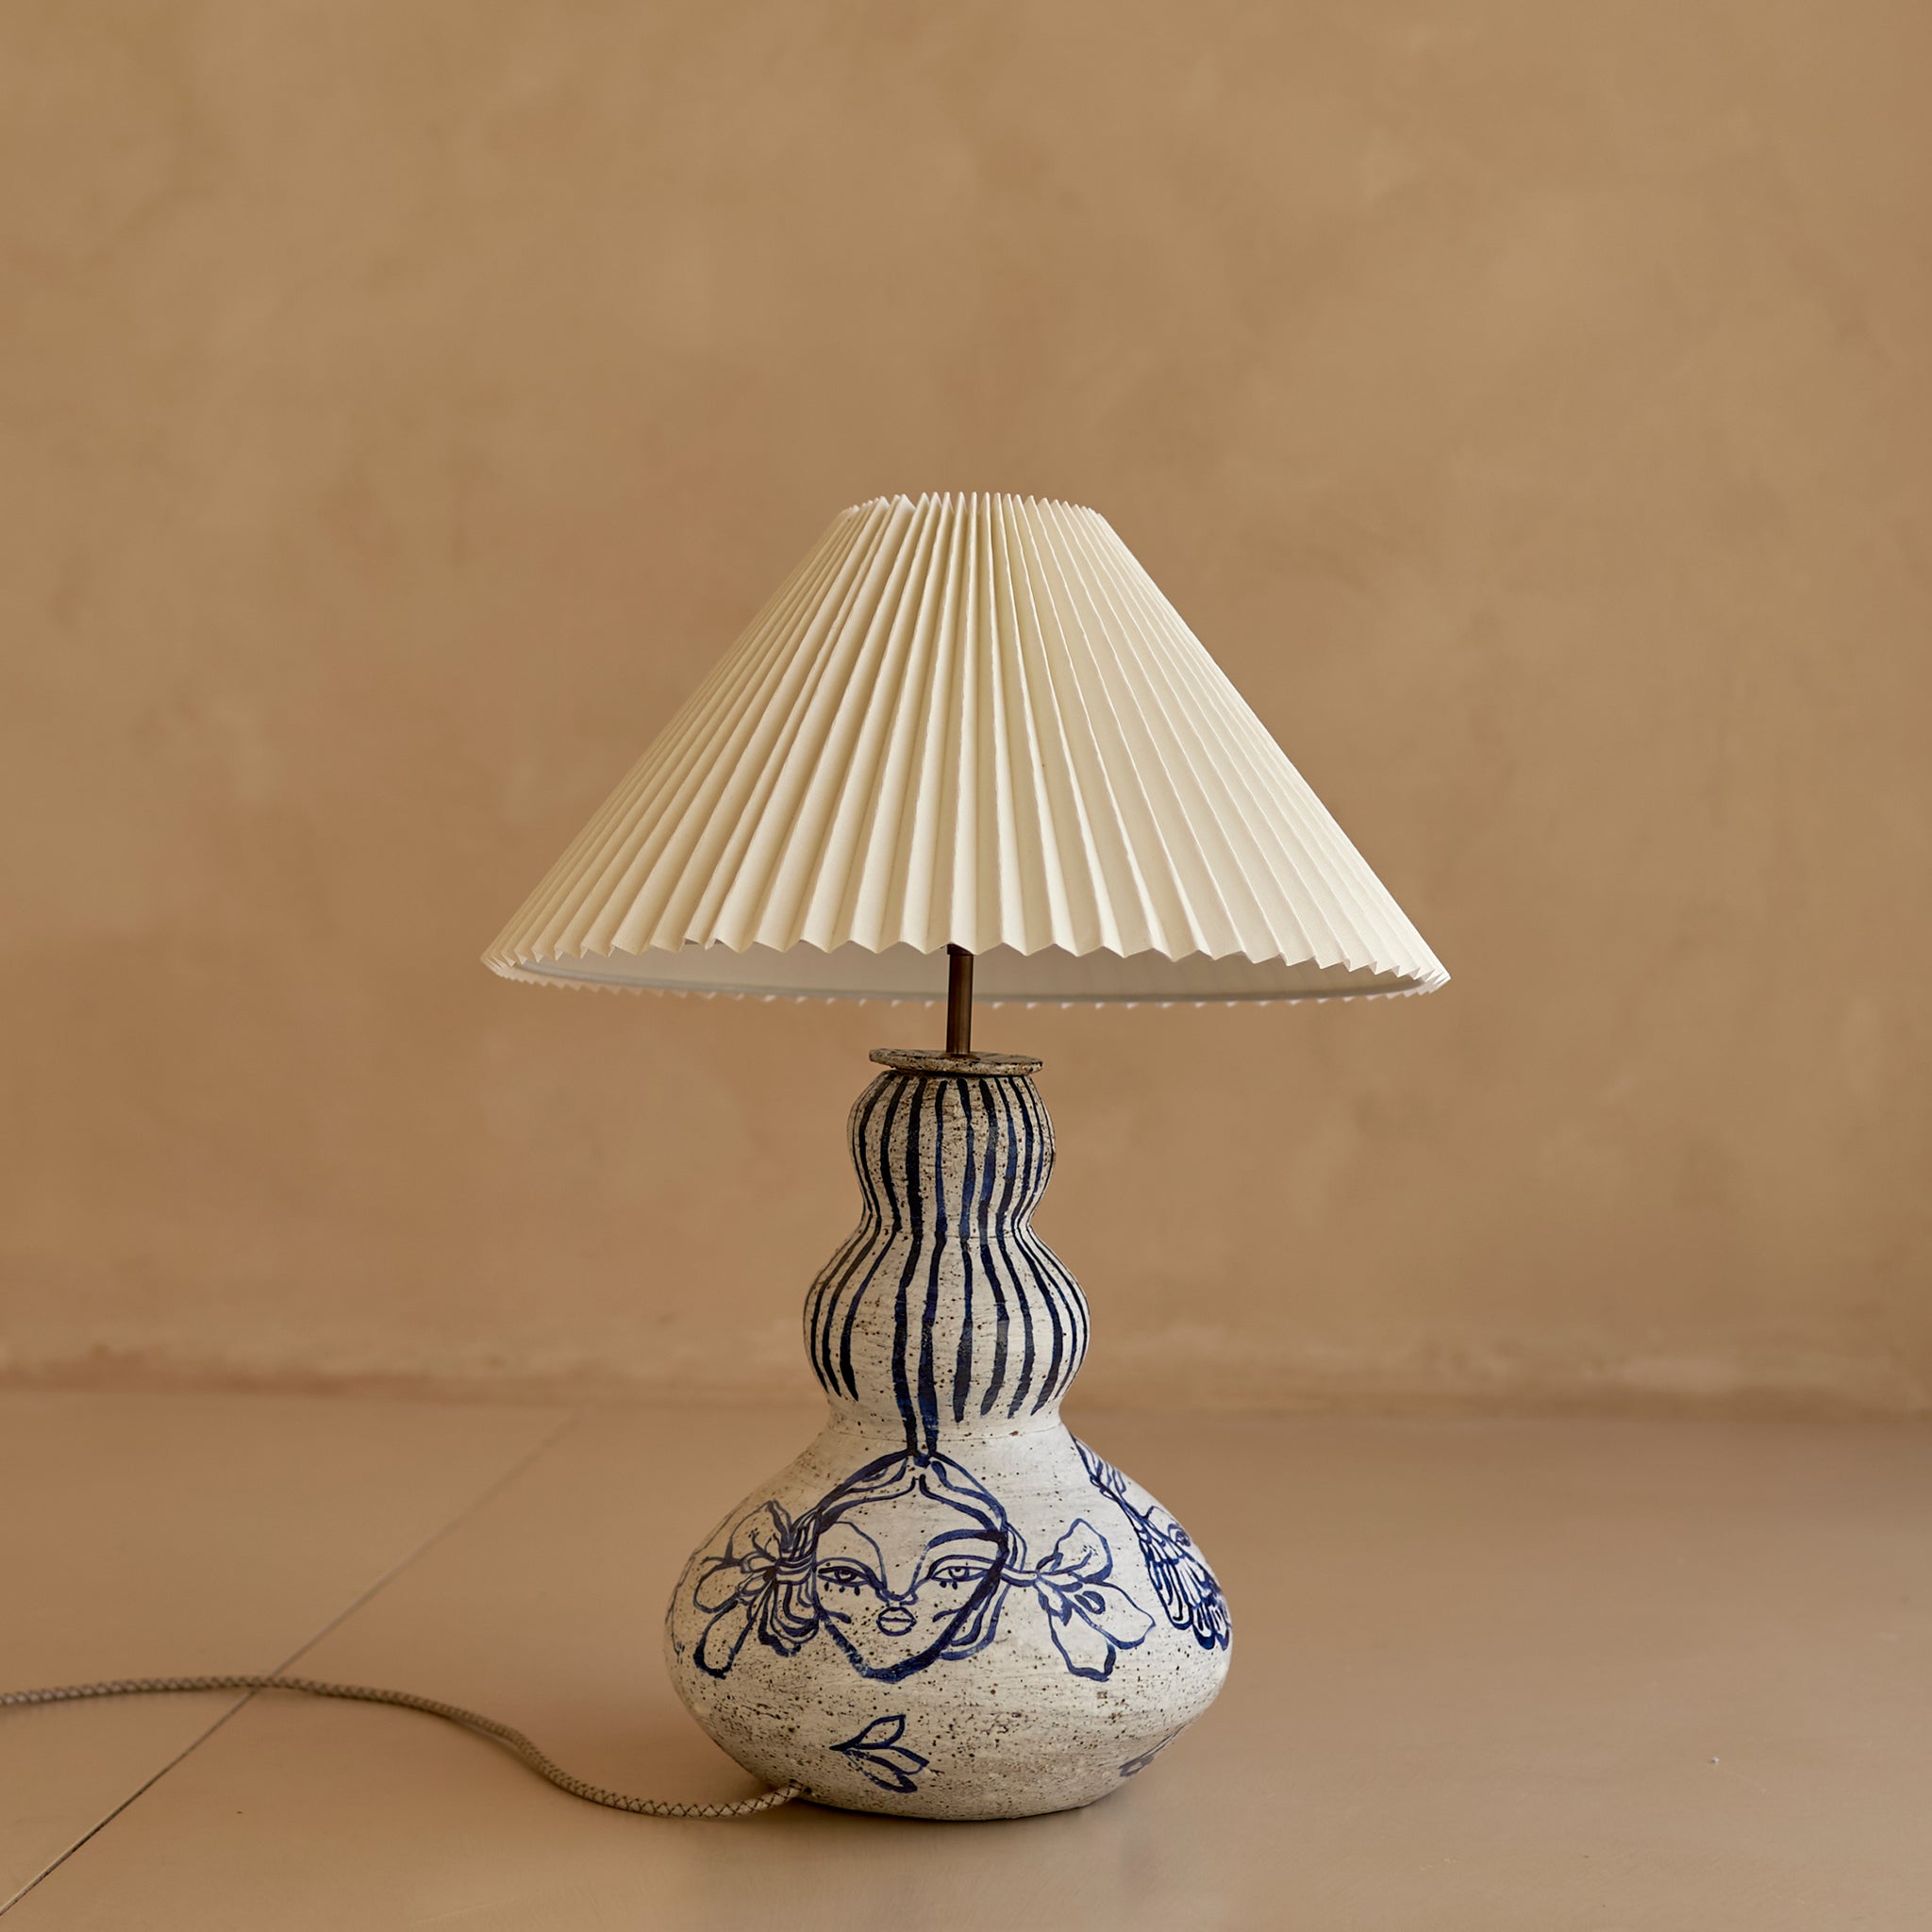 Lamp No. 2